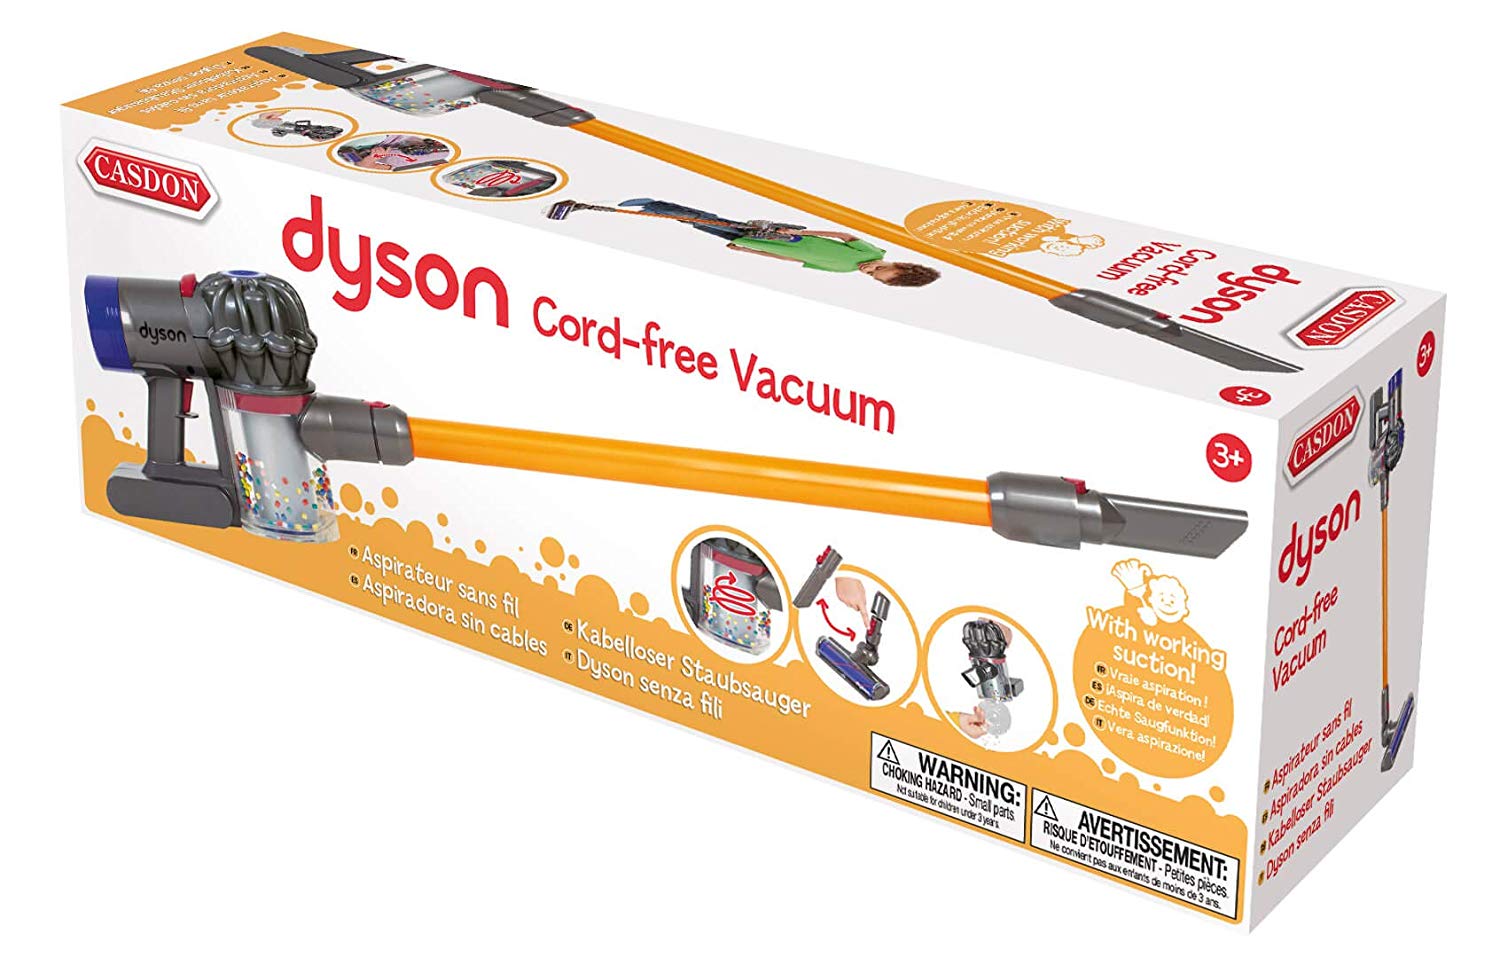 casdon cord free dyson